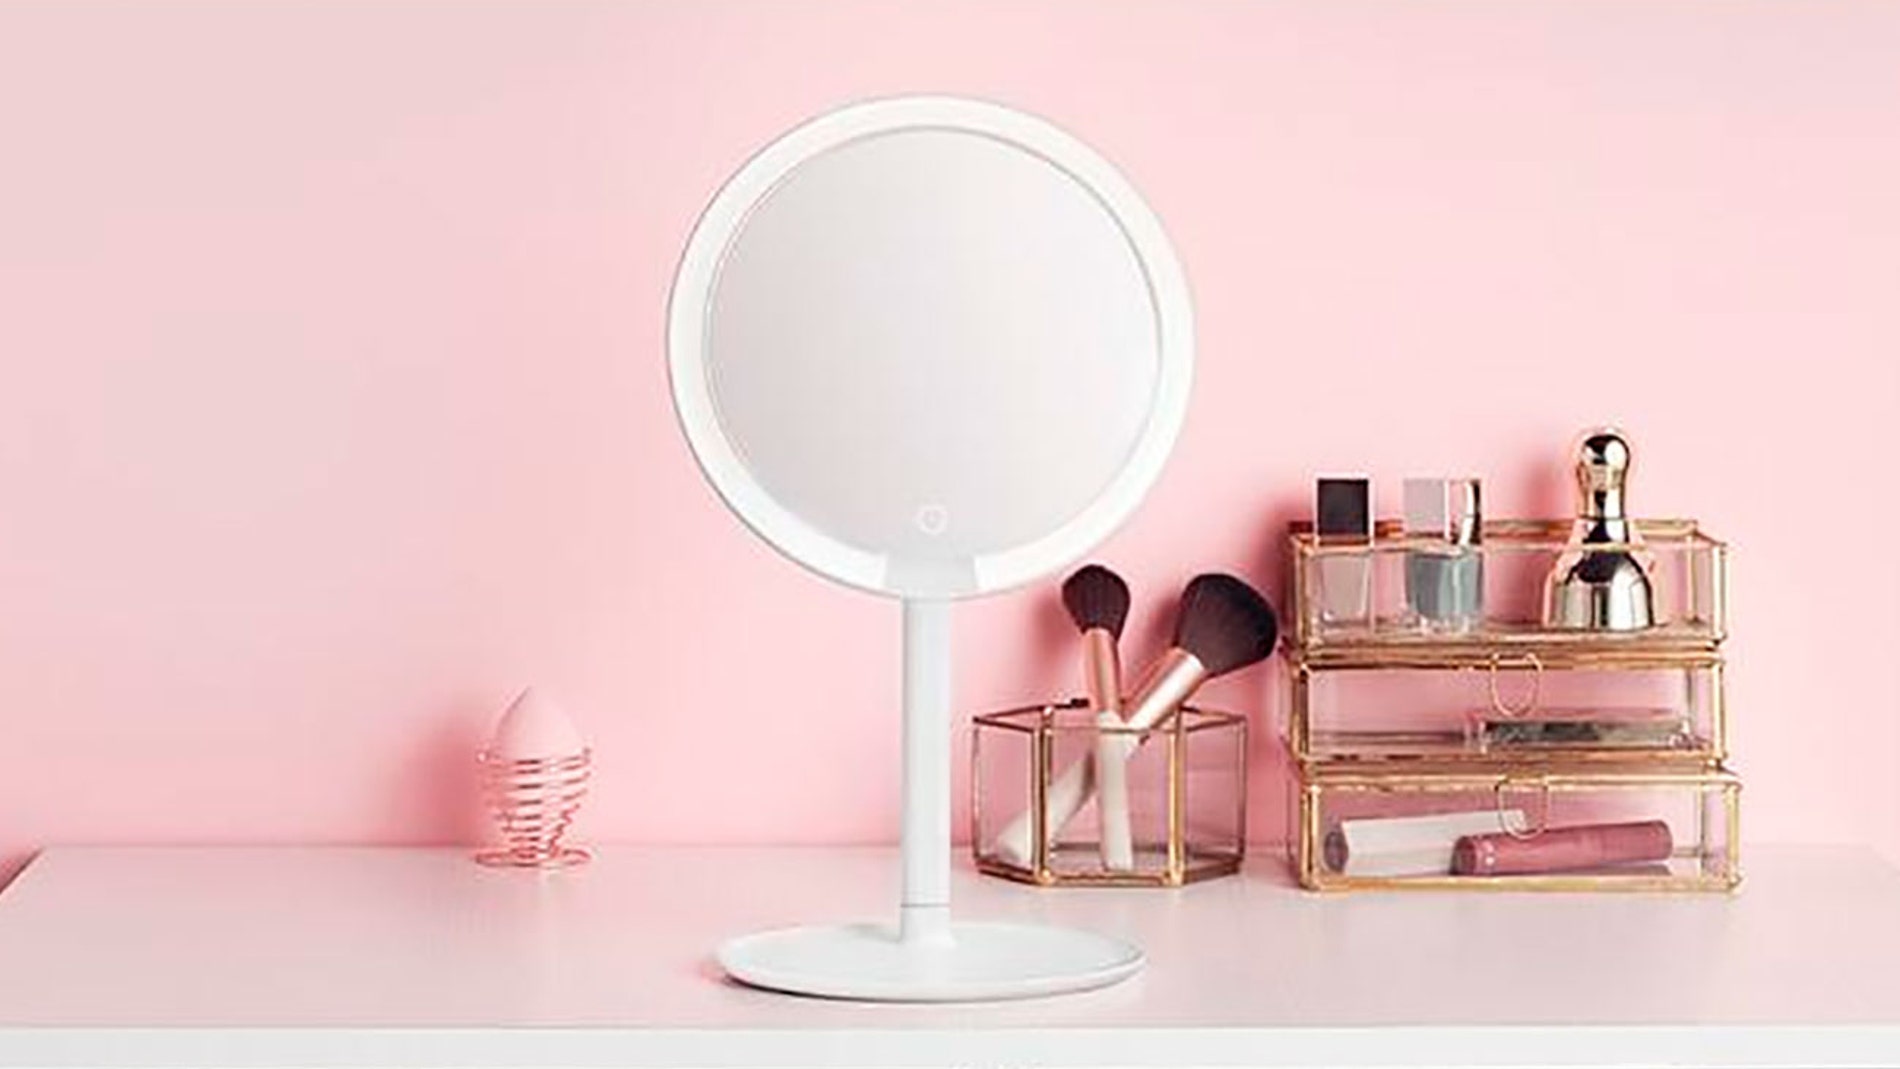 Mijia LED makeup mirror